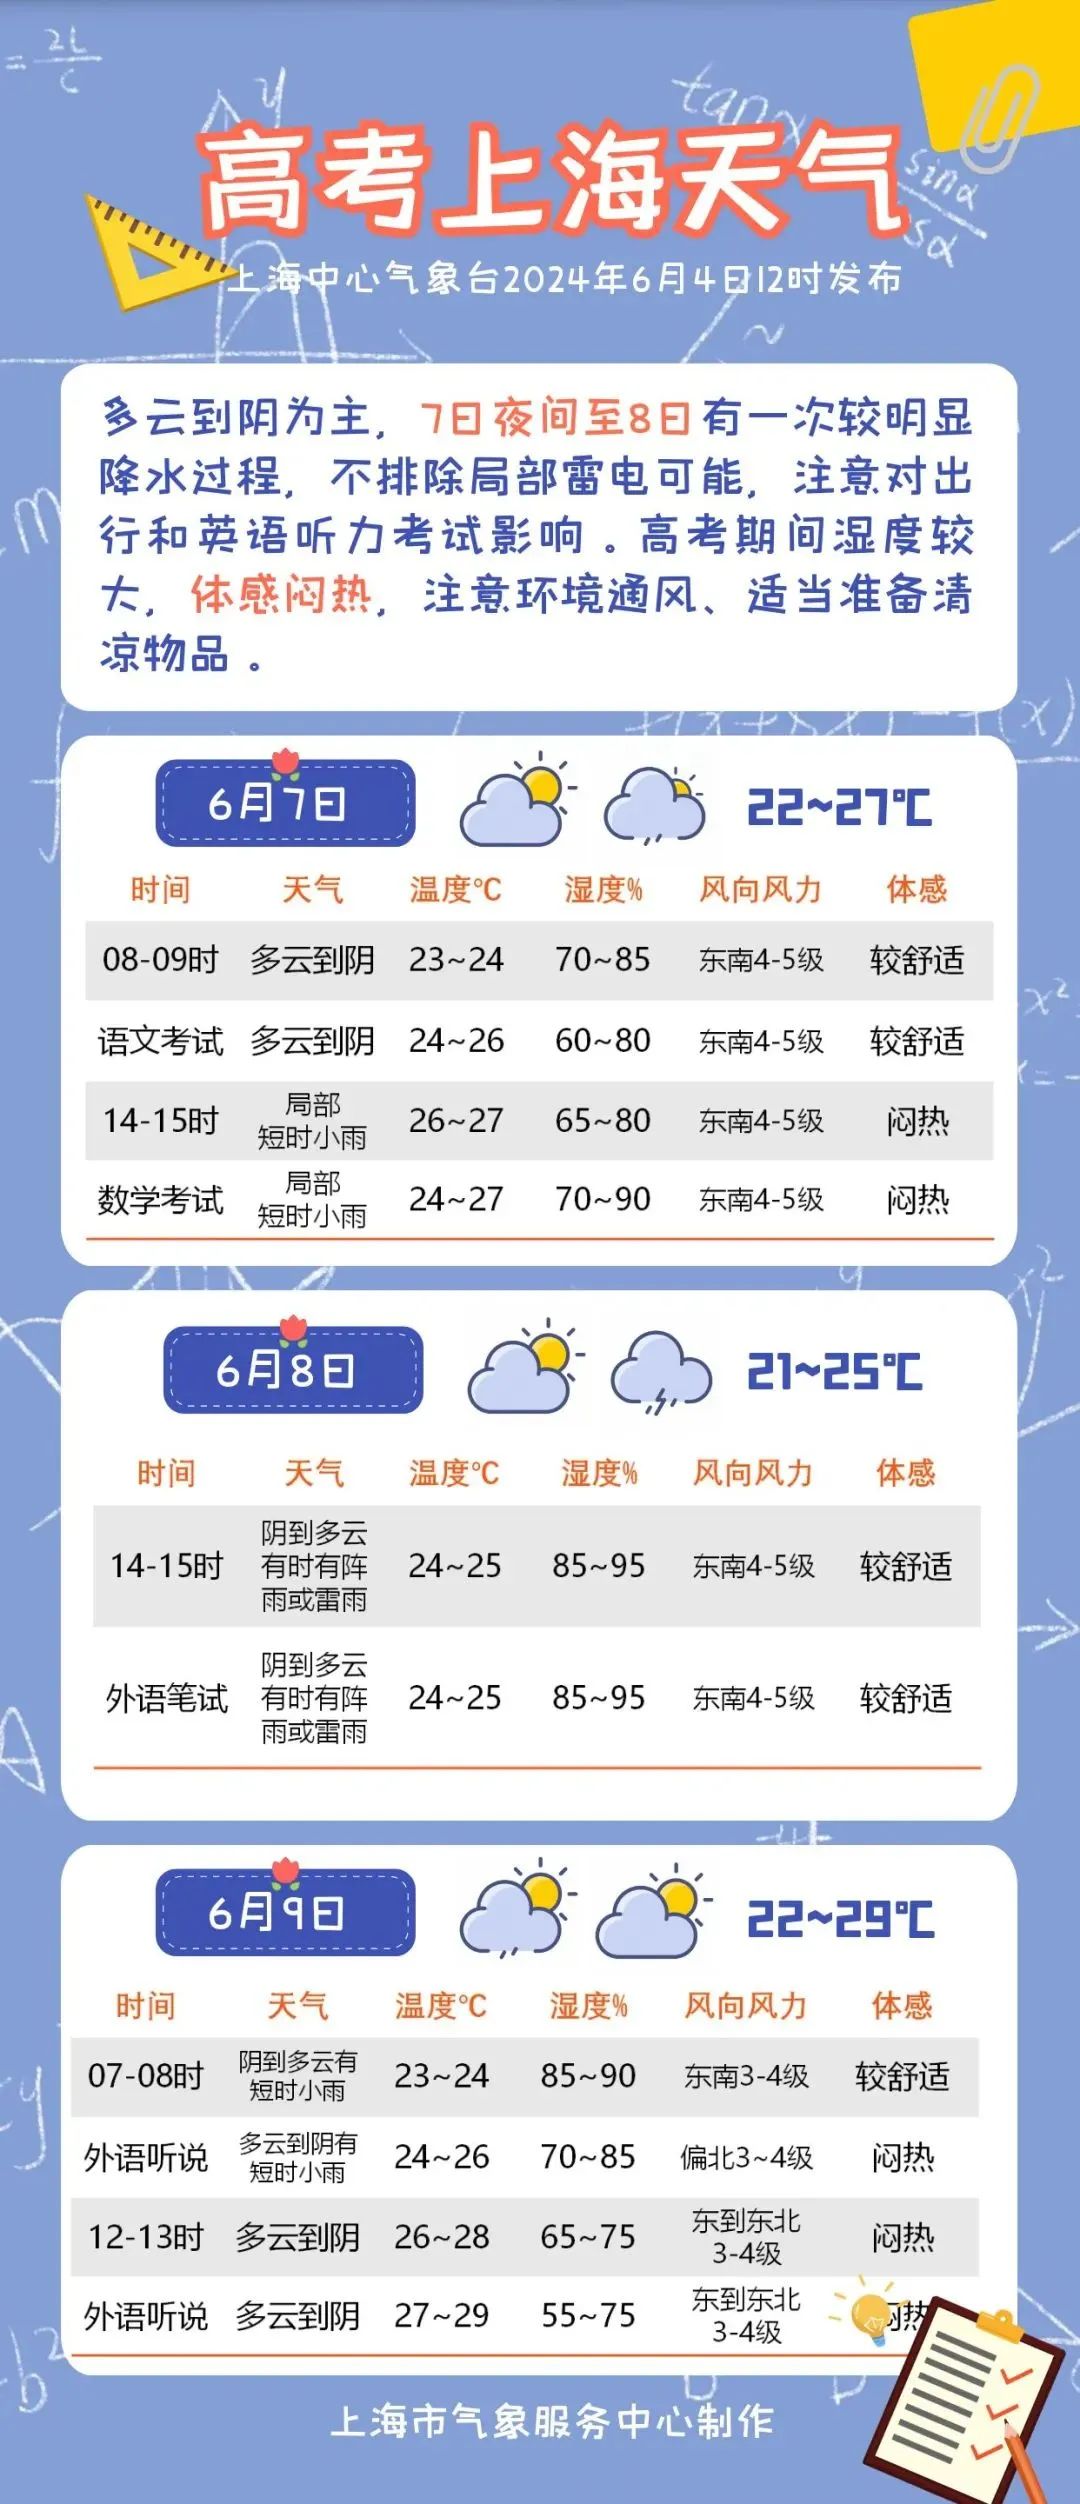 上海高考期间天气预报出炉!7日夜里到8日有一次较明显降水